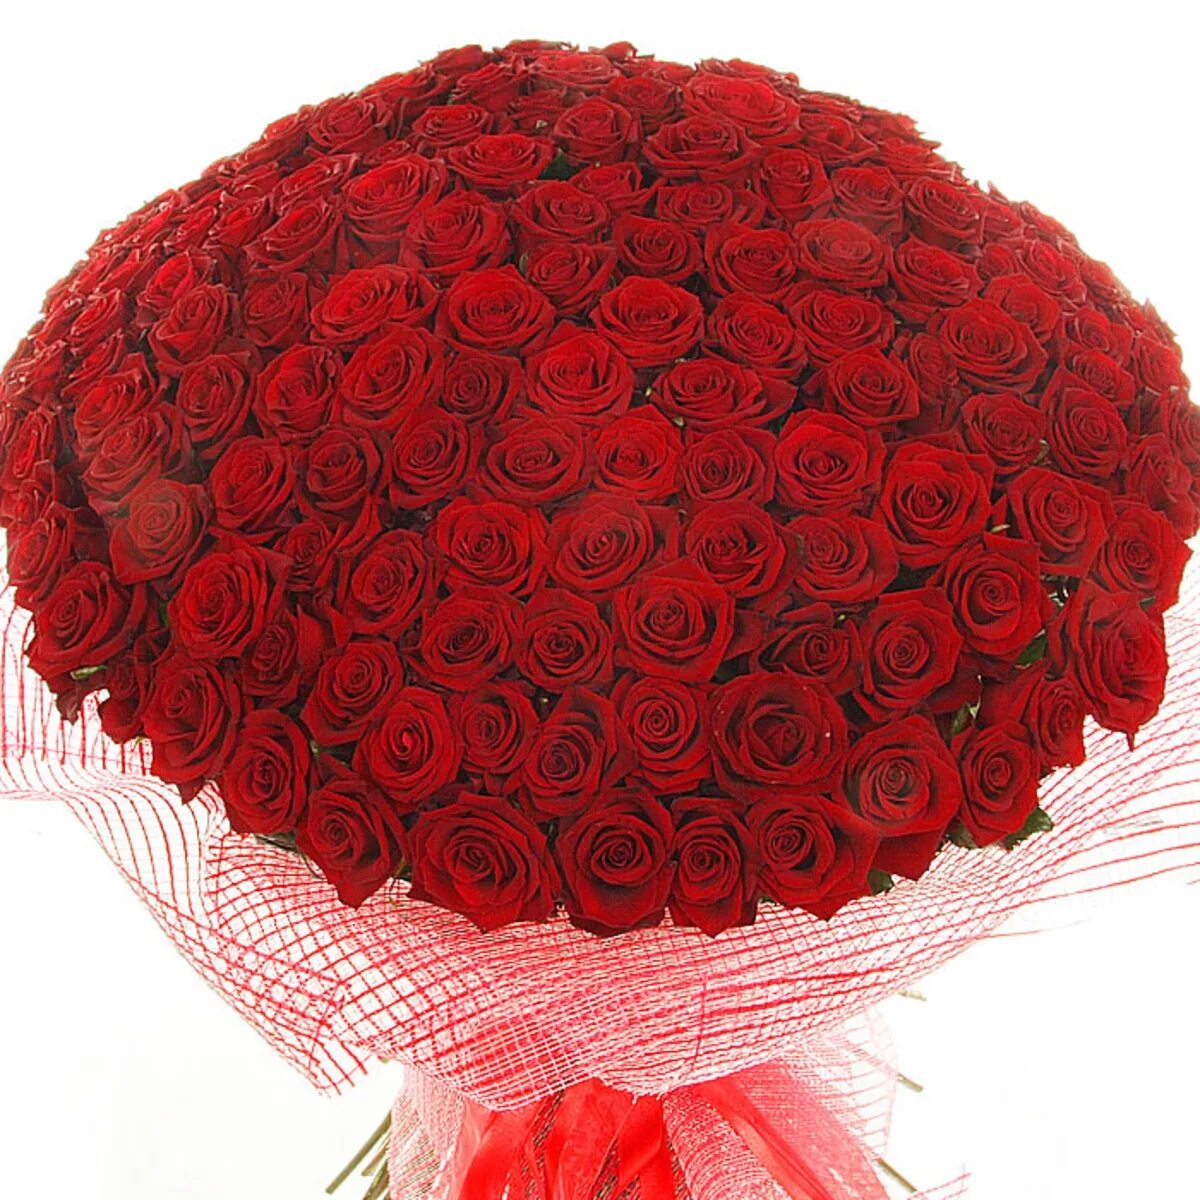 С днем рождения огромные розы. Красивые большие букеты. Красивый букет роз. Шикарный букет роз. Большой красивый букет цветов.